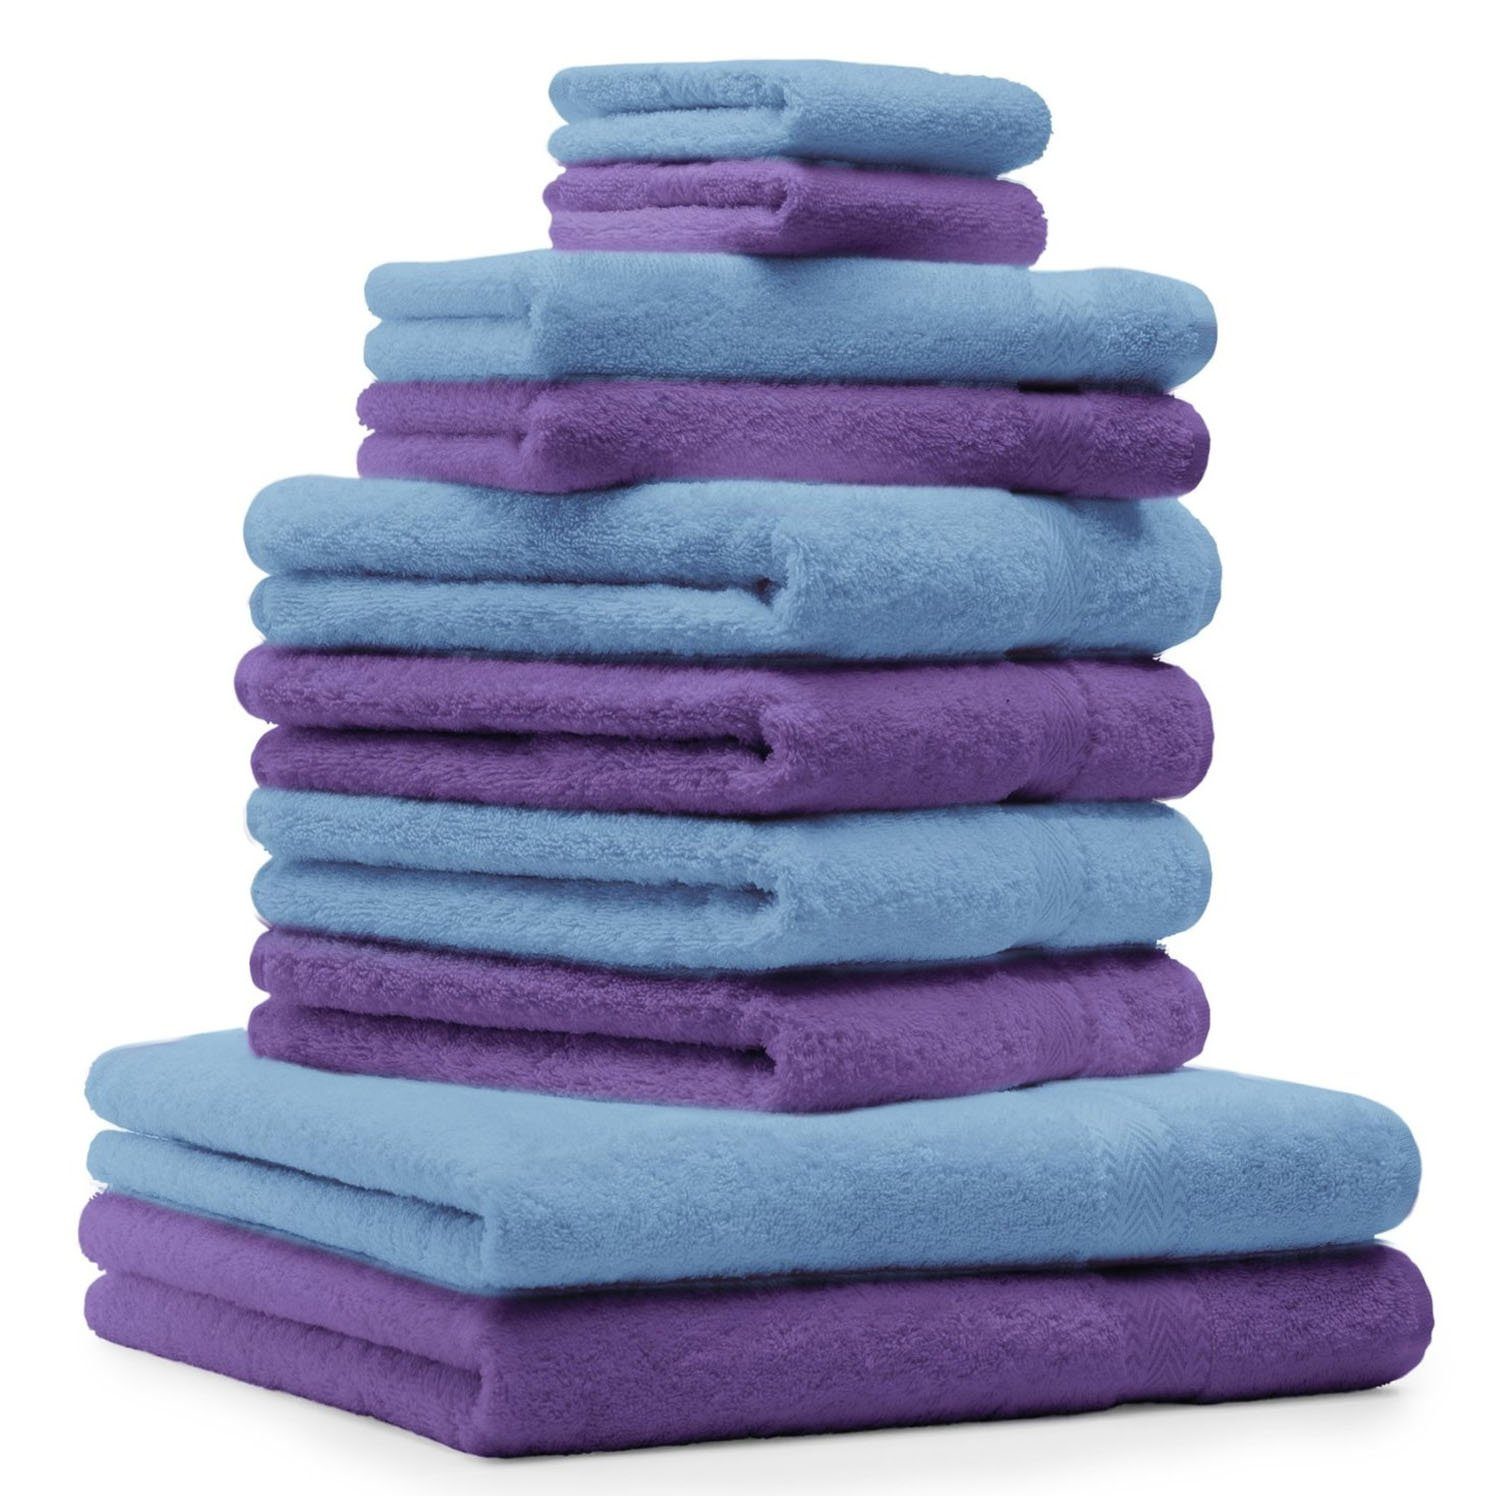 Betz Handtuch Set 10-TLG. Handtuch-Set Classic Farbe lila und hellblau, 100% Baumwolle | Handtuch-Sets